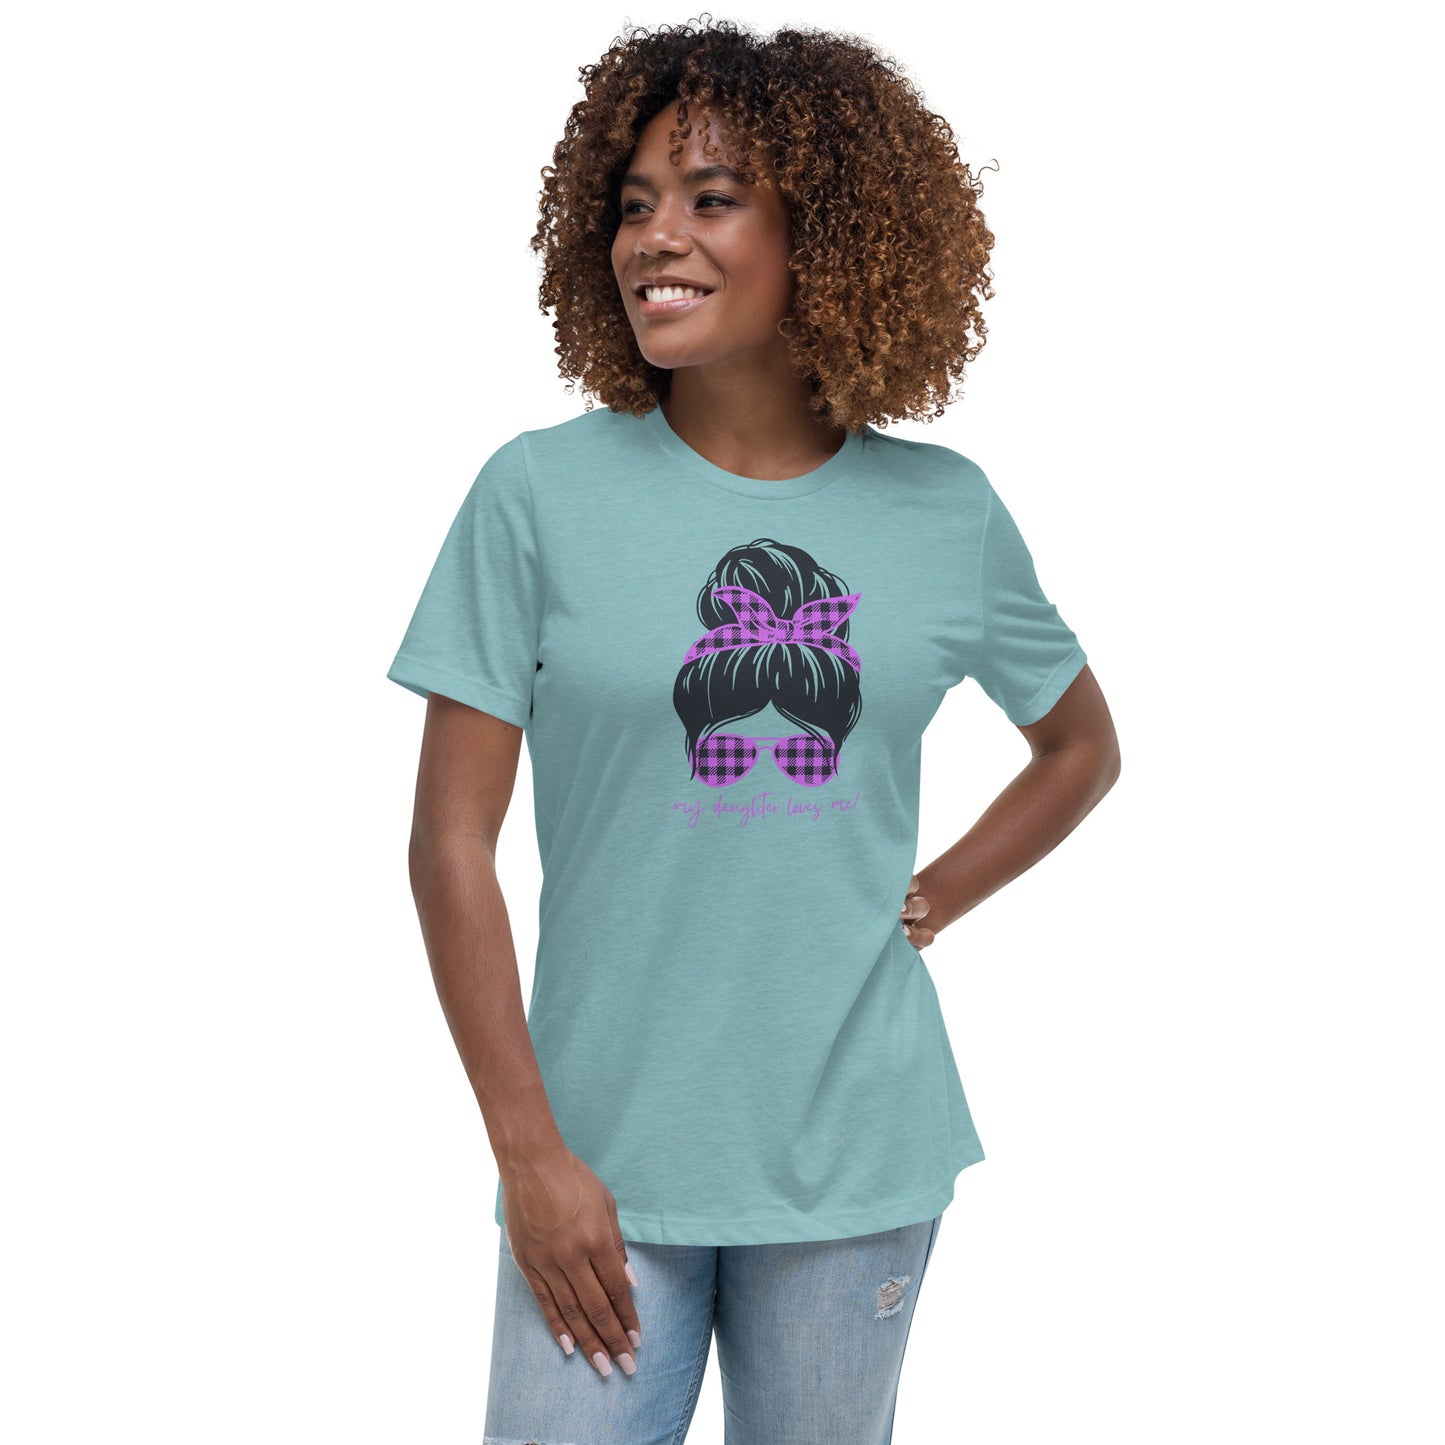 Women's Relaxed T-Shirt - My daughter loves me! T-shirt Stylin' Spirt   